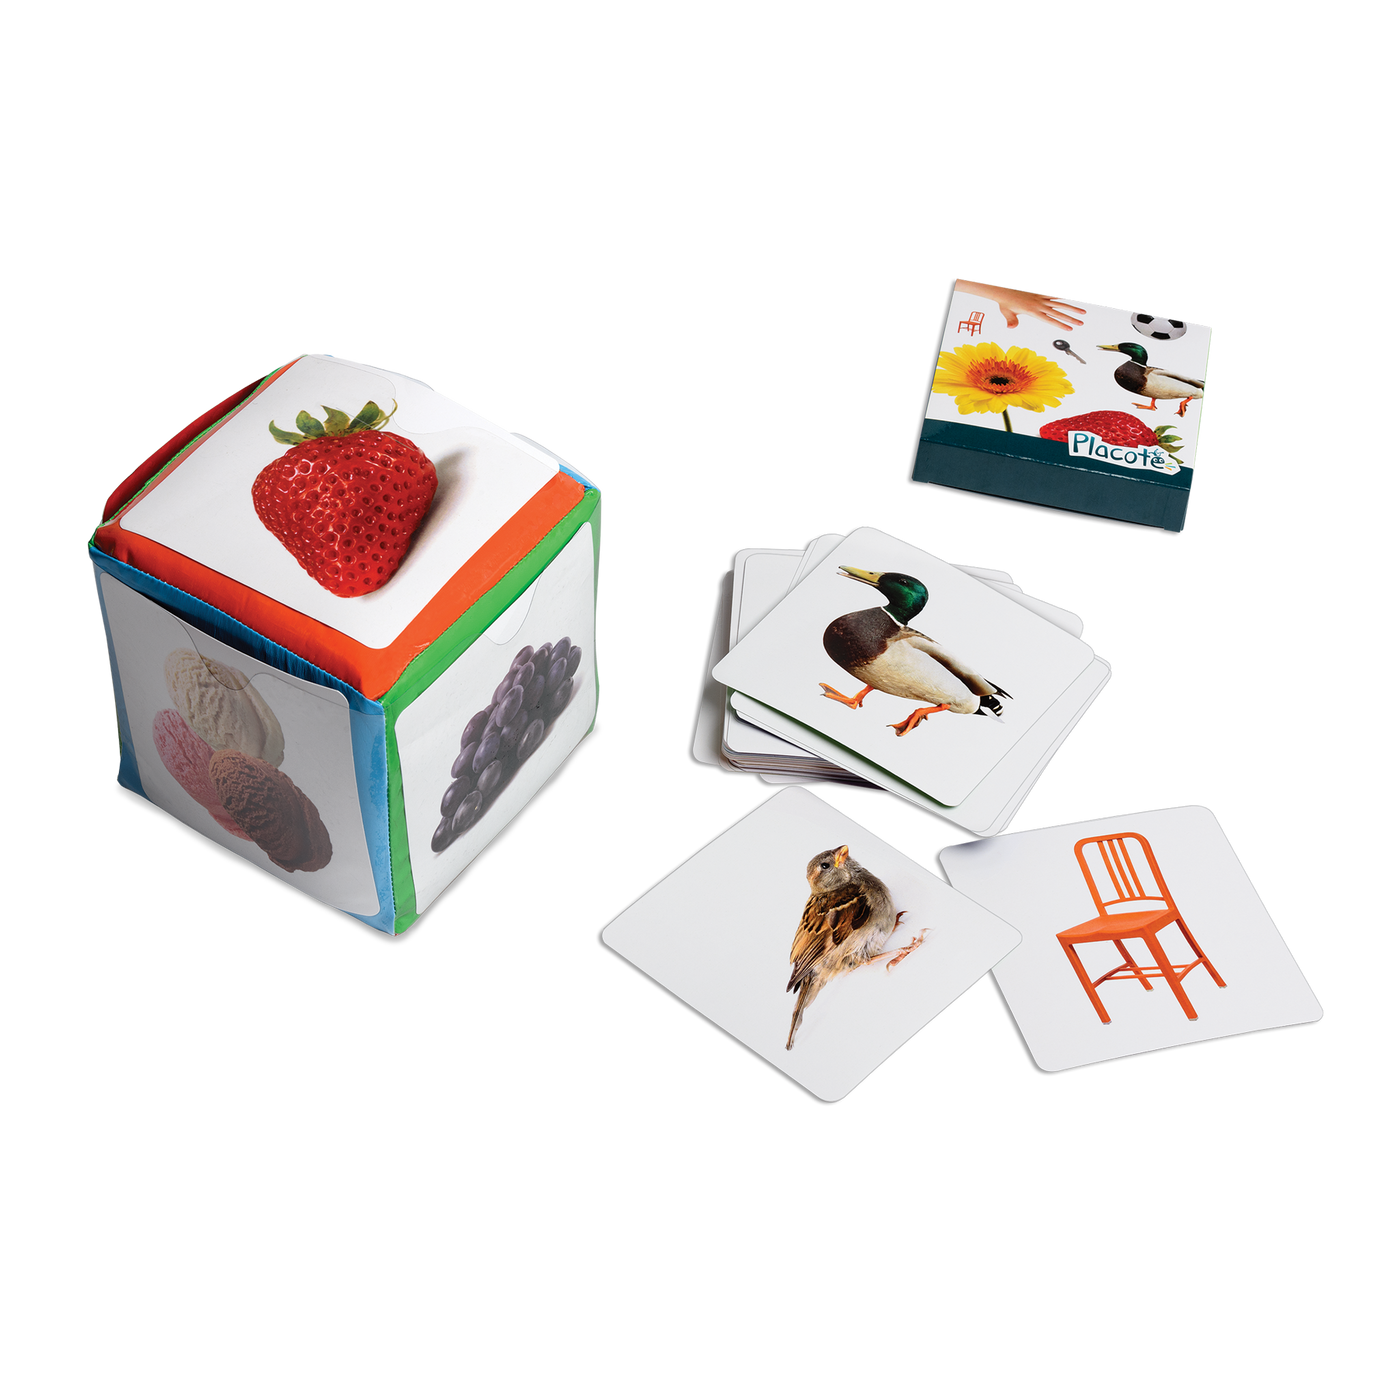 Le dé des premiers mots - Composantes du jeu : dé à pochettes, boite de cartes et exemples de cartes (oiseau, chaise, canard)